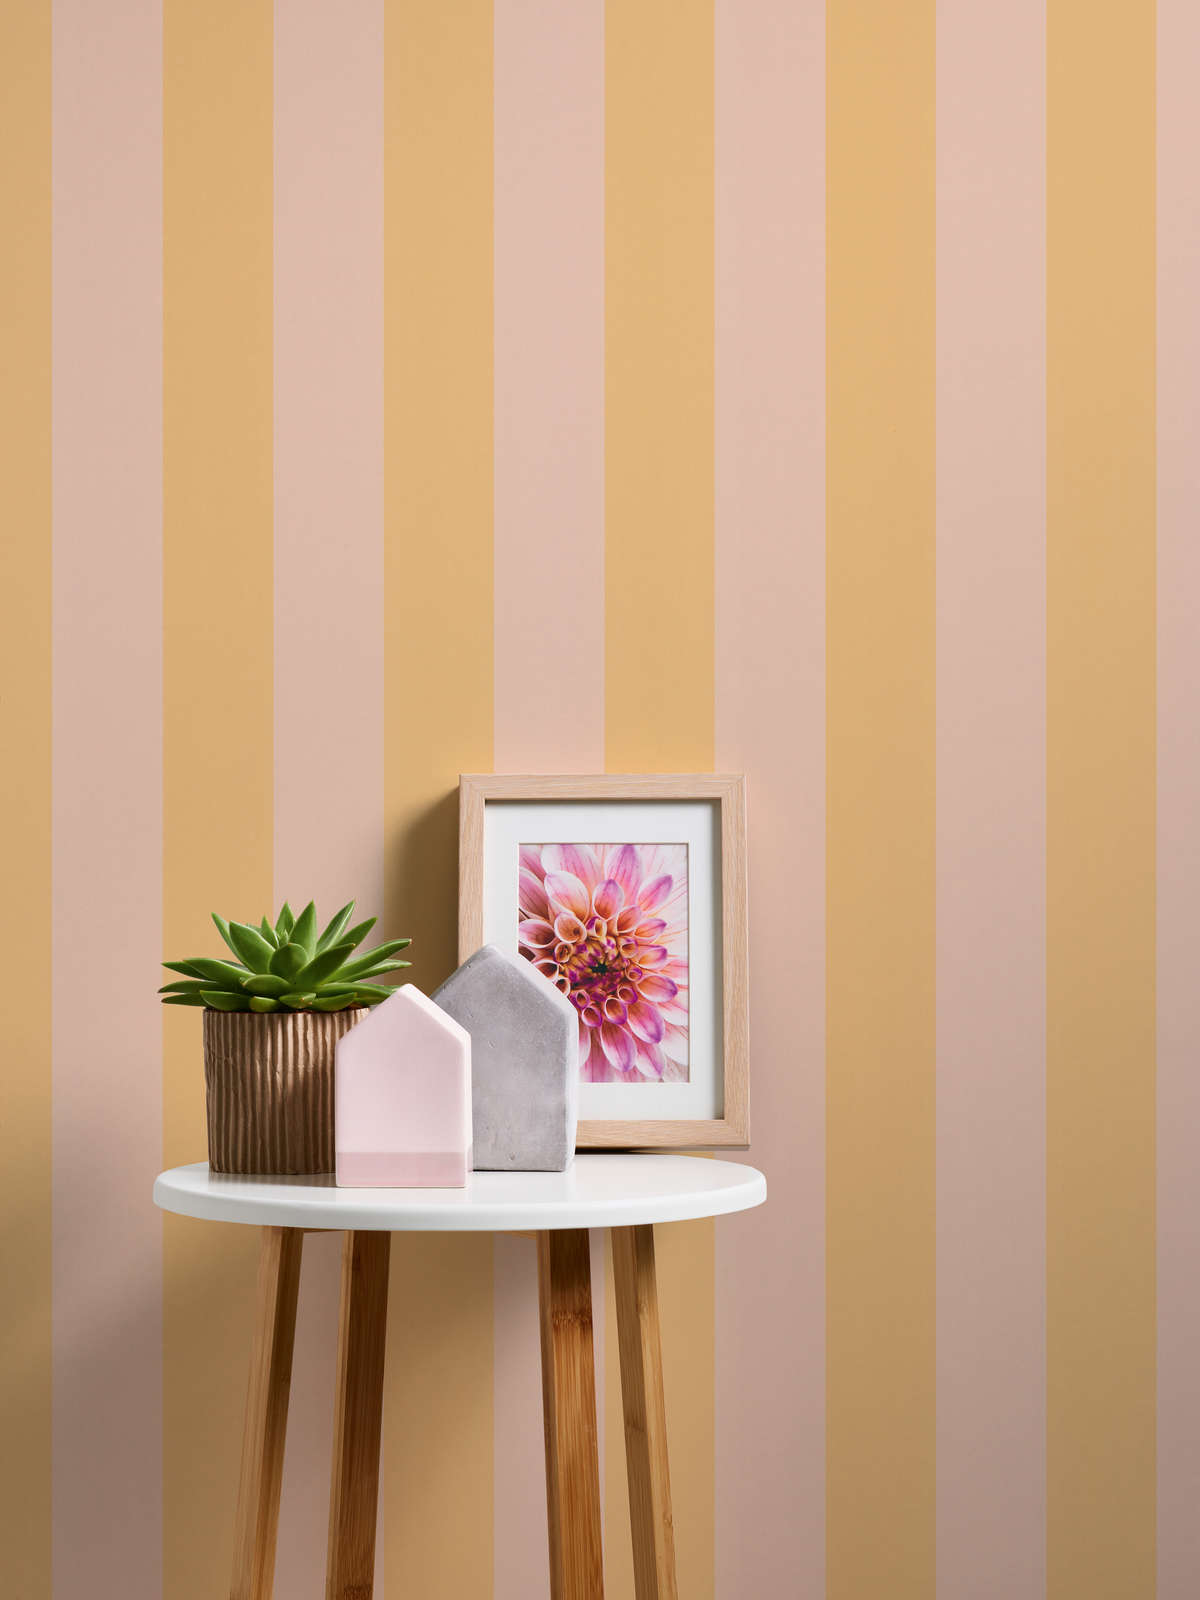             Vliesbehang met blokstrepen in zachte tinten - oranje, roze
        